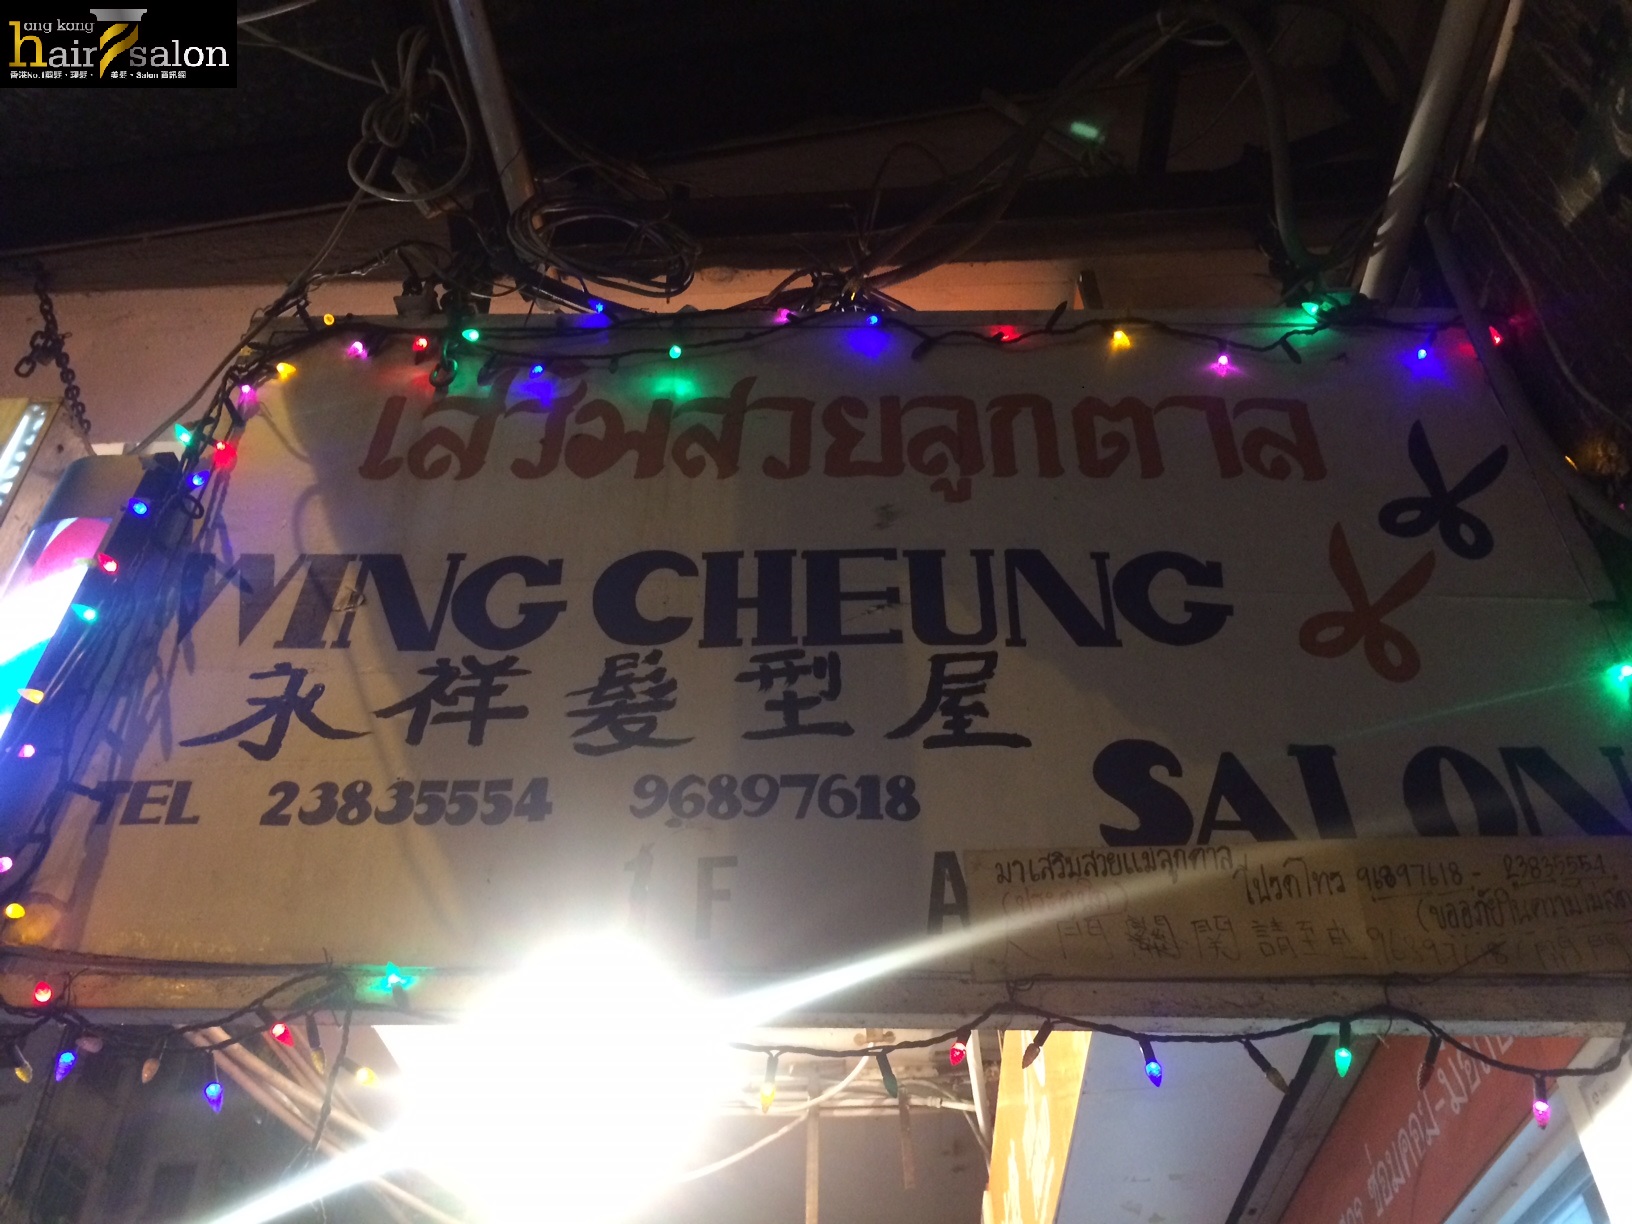 髮型屋: Wing Cheung Salon 永祥髮型屋 